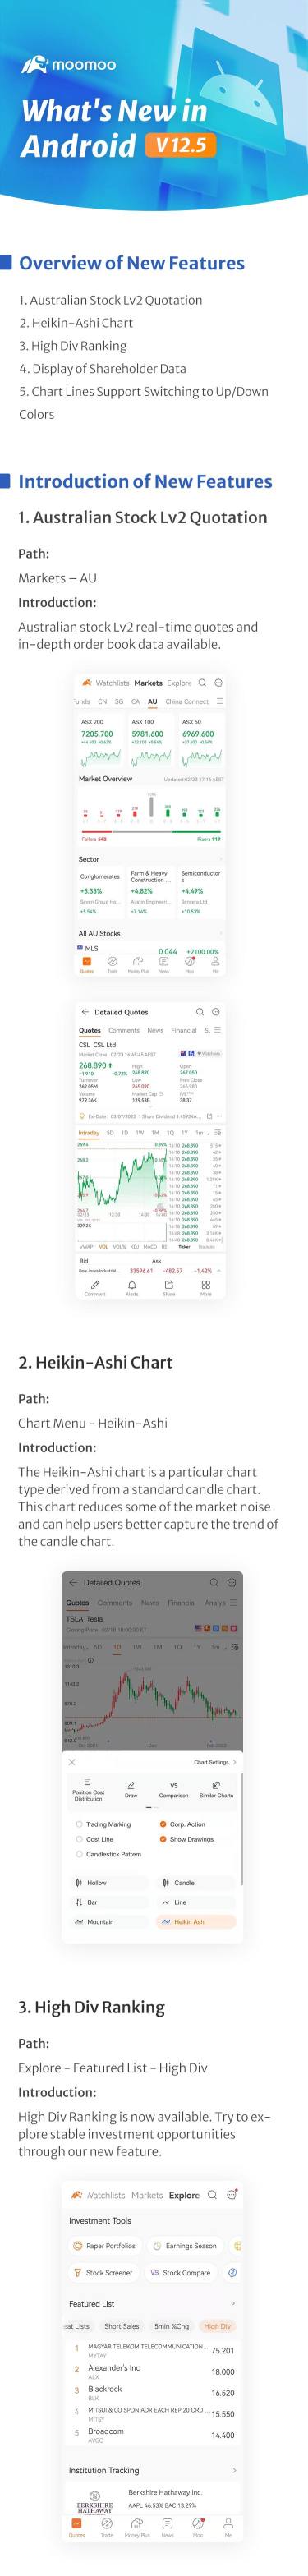 新增内容：安卓 v12.5 现已推出 Heikin-Ashi 排行榜